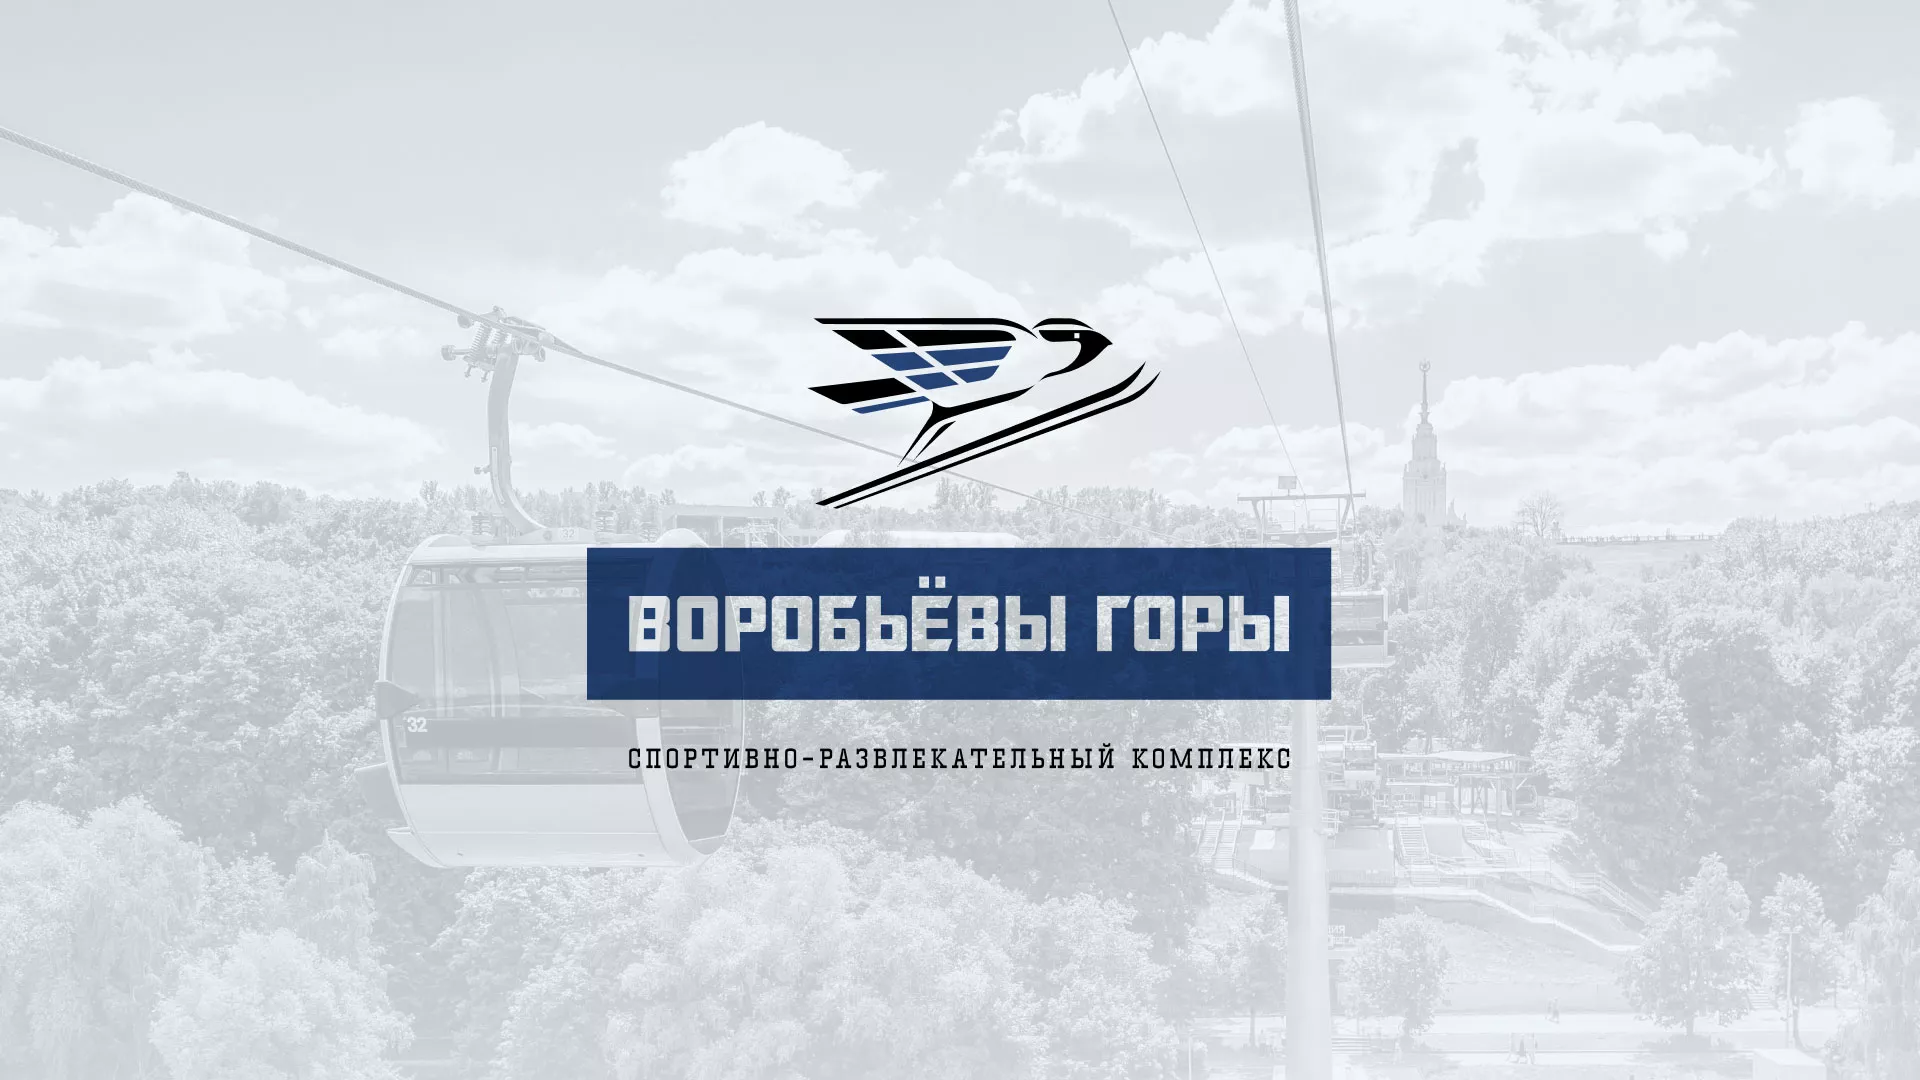 Разработка сайта в Дивногорске для спортивно-развлекательного комплекса «Воробьёвы горы»